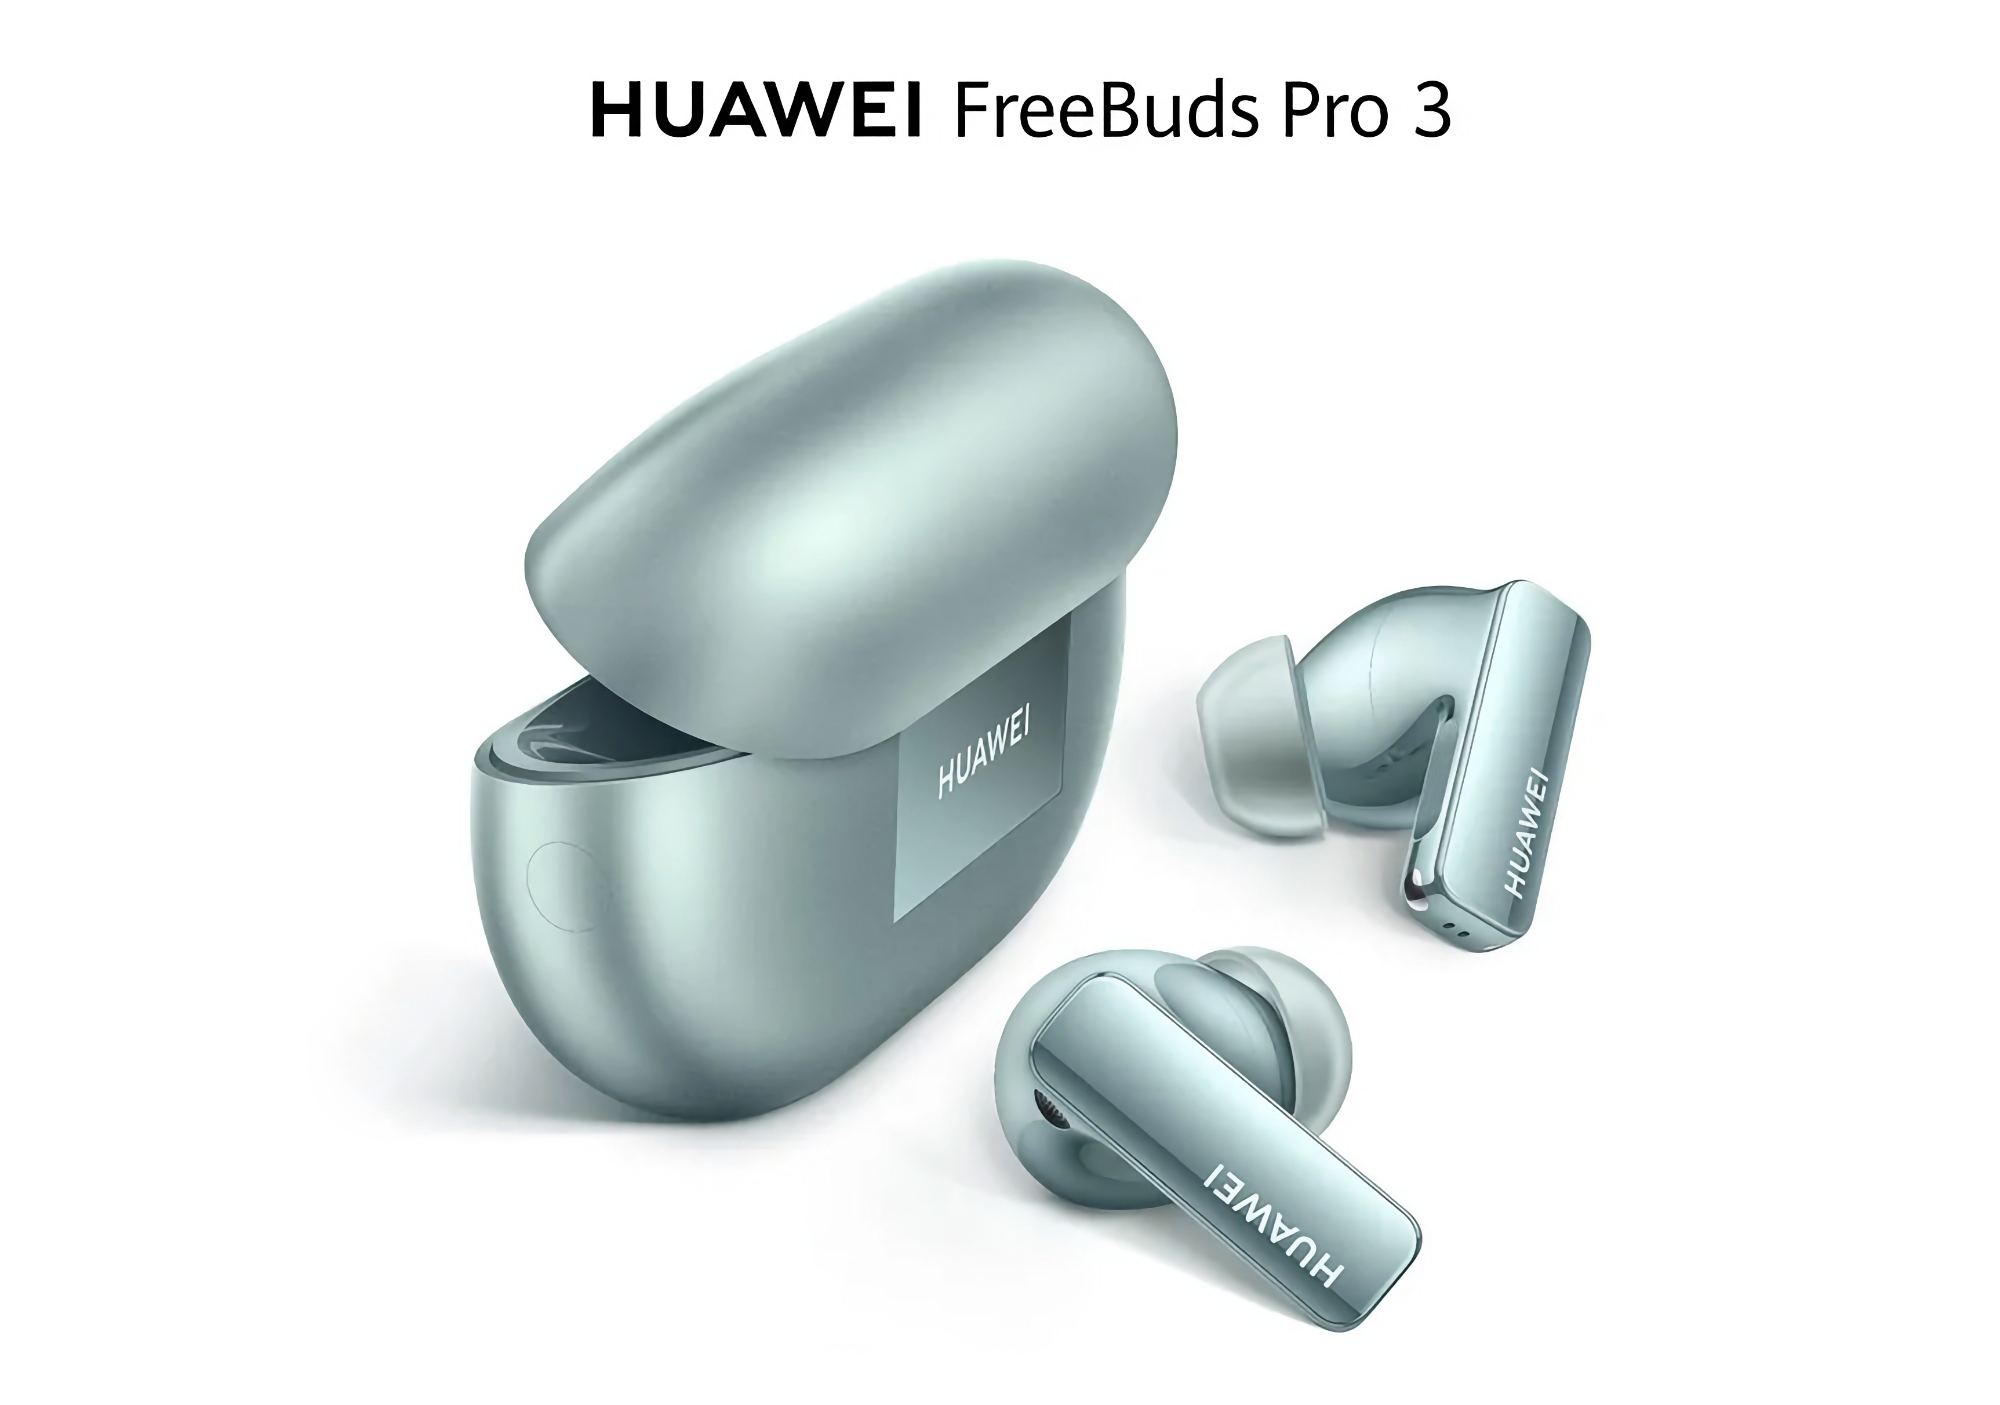 Huawei FreeBuds Pro 3 fås på Amazon med en rabat på 20 euro